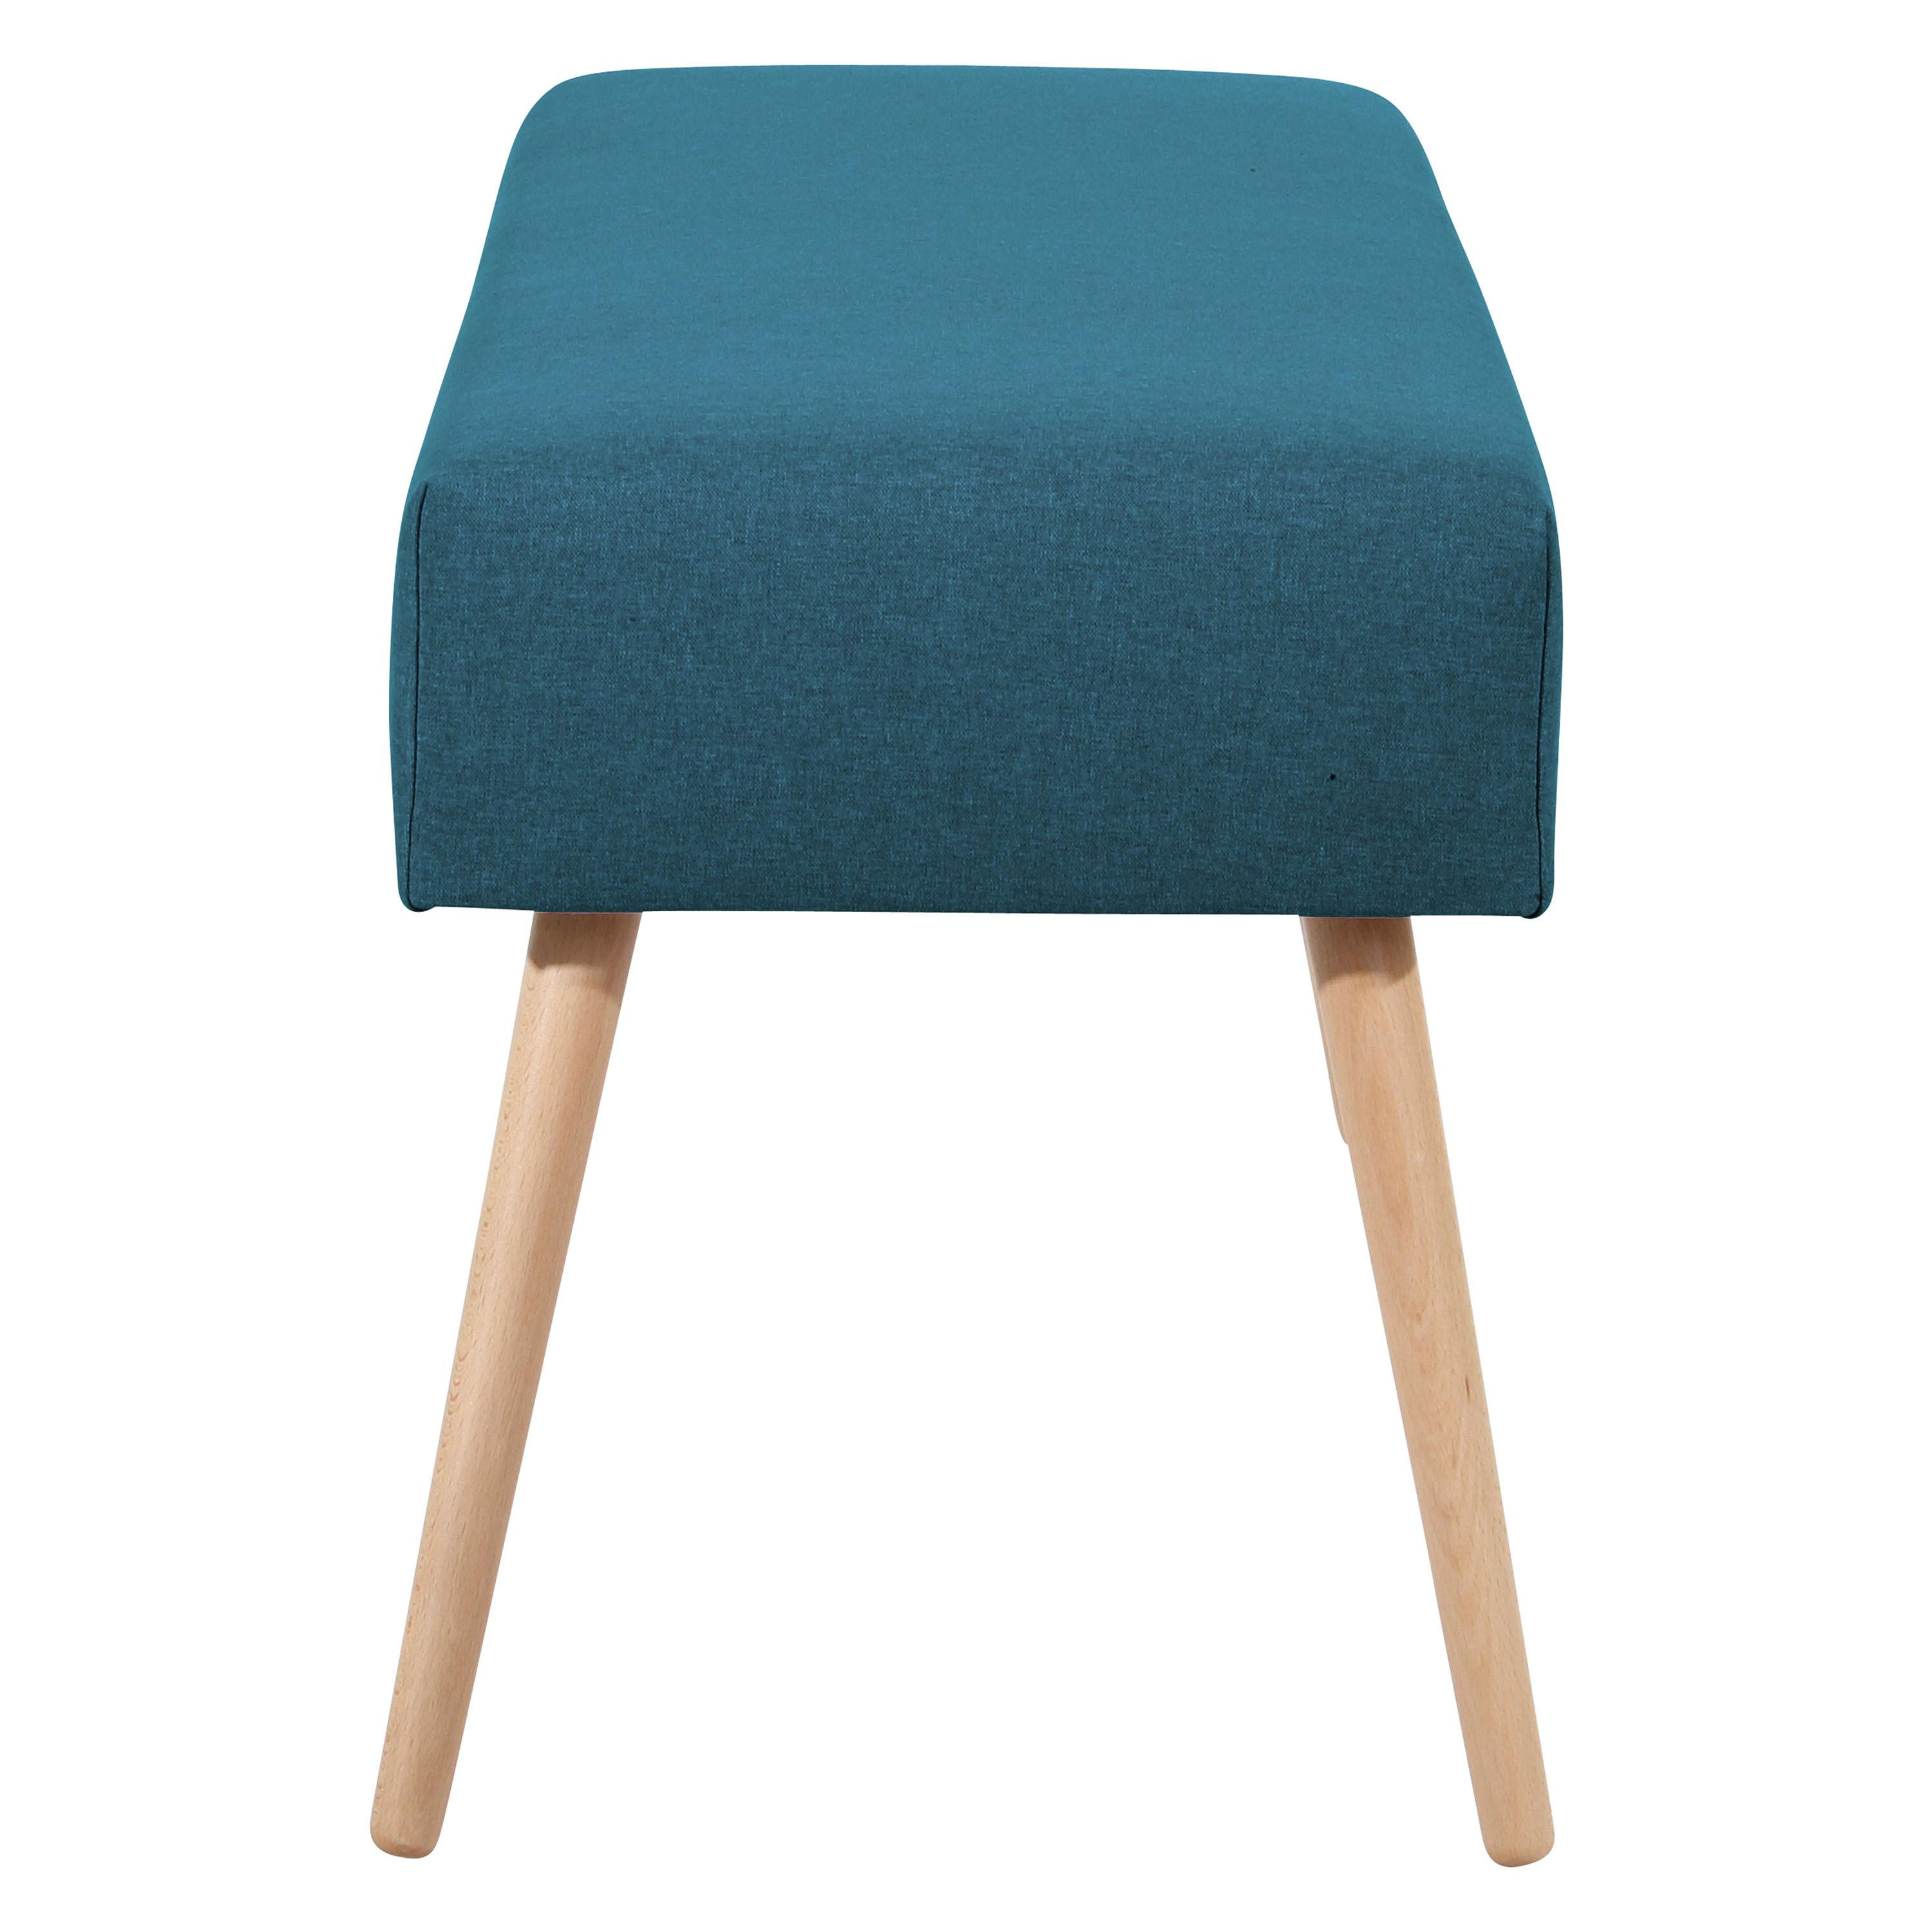 Sitzbank Gepolstert Blau Sue BxHxT: 114x48x40 cm - Blau/Buchefarben, Design, Textil (114/48/40cm) - Max Winzer